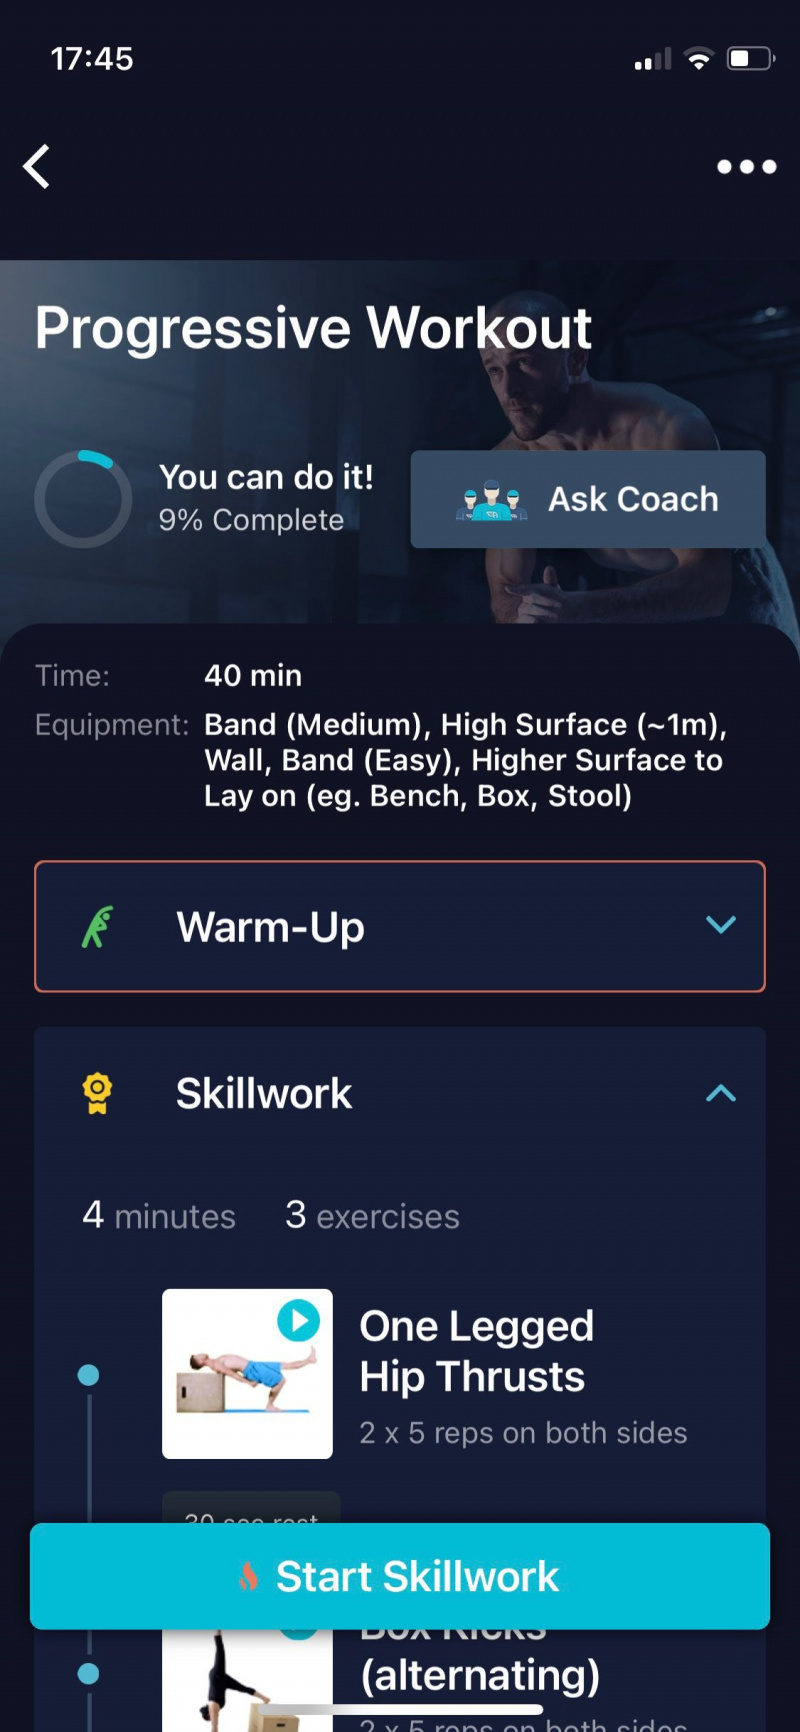   „Movement Athlete“ ekrano kopija, kurioje rodoma progresyvi treniruočių programa